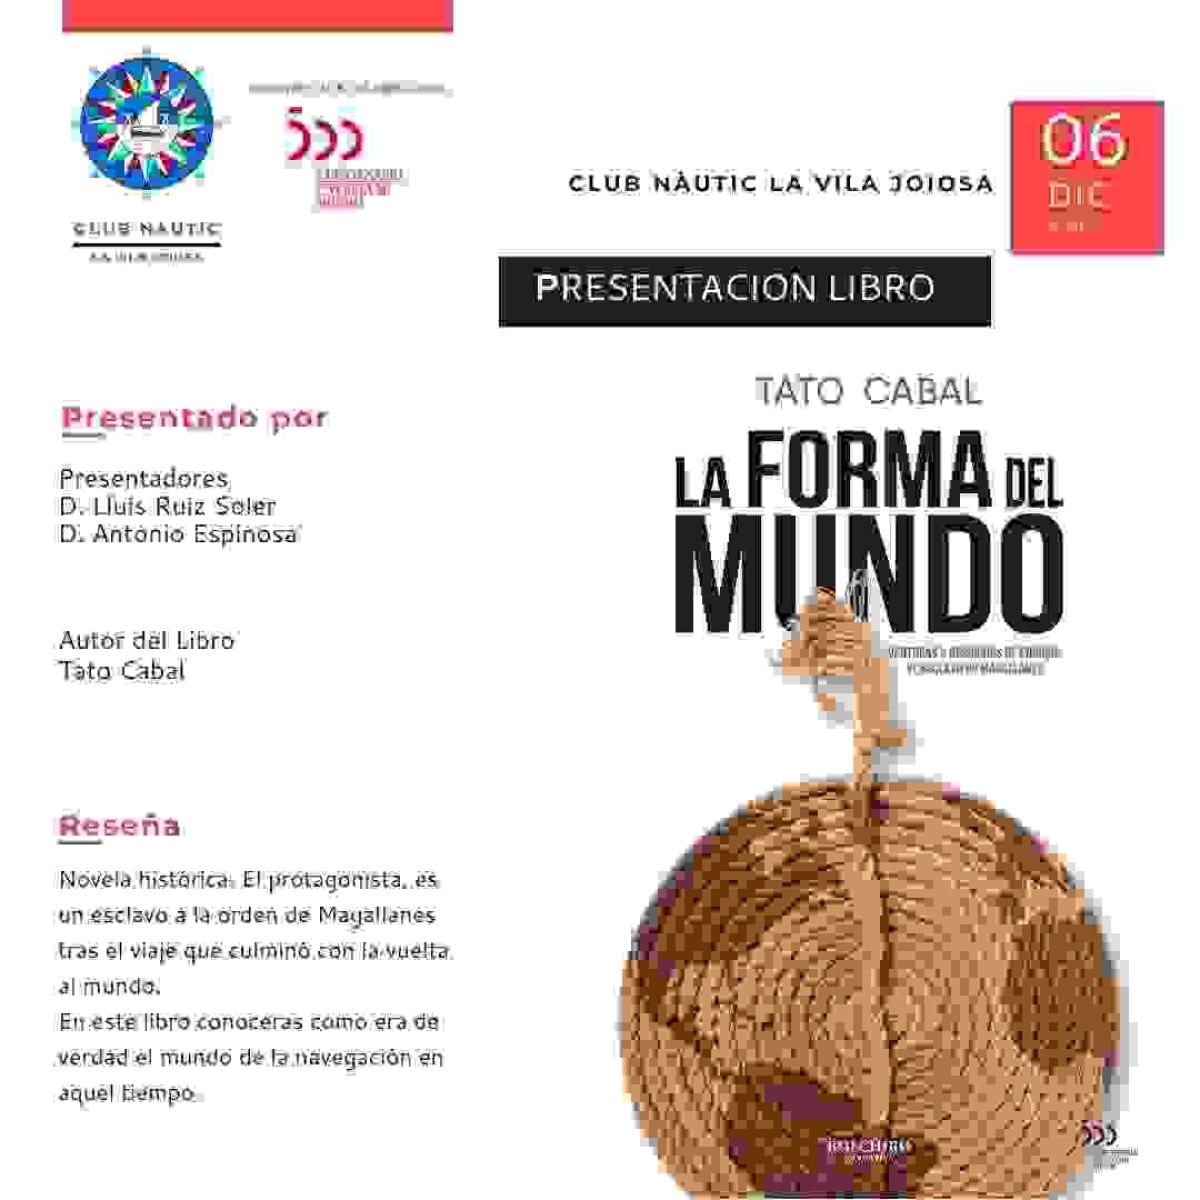 El Club Nàutic de la Vila alberga la presentación del libro ‘La forma del mundo’ de Tato Cabal